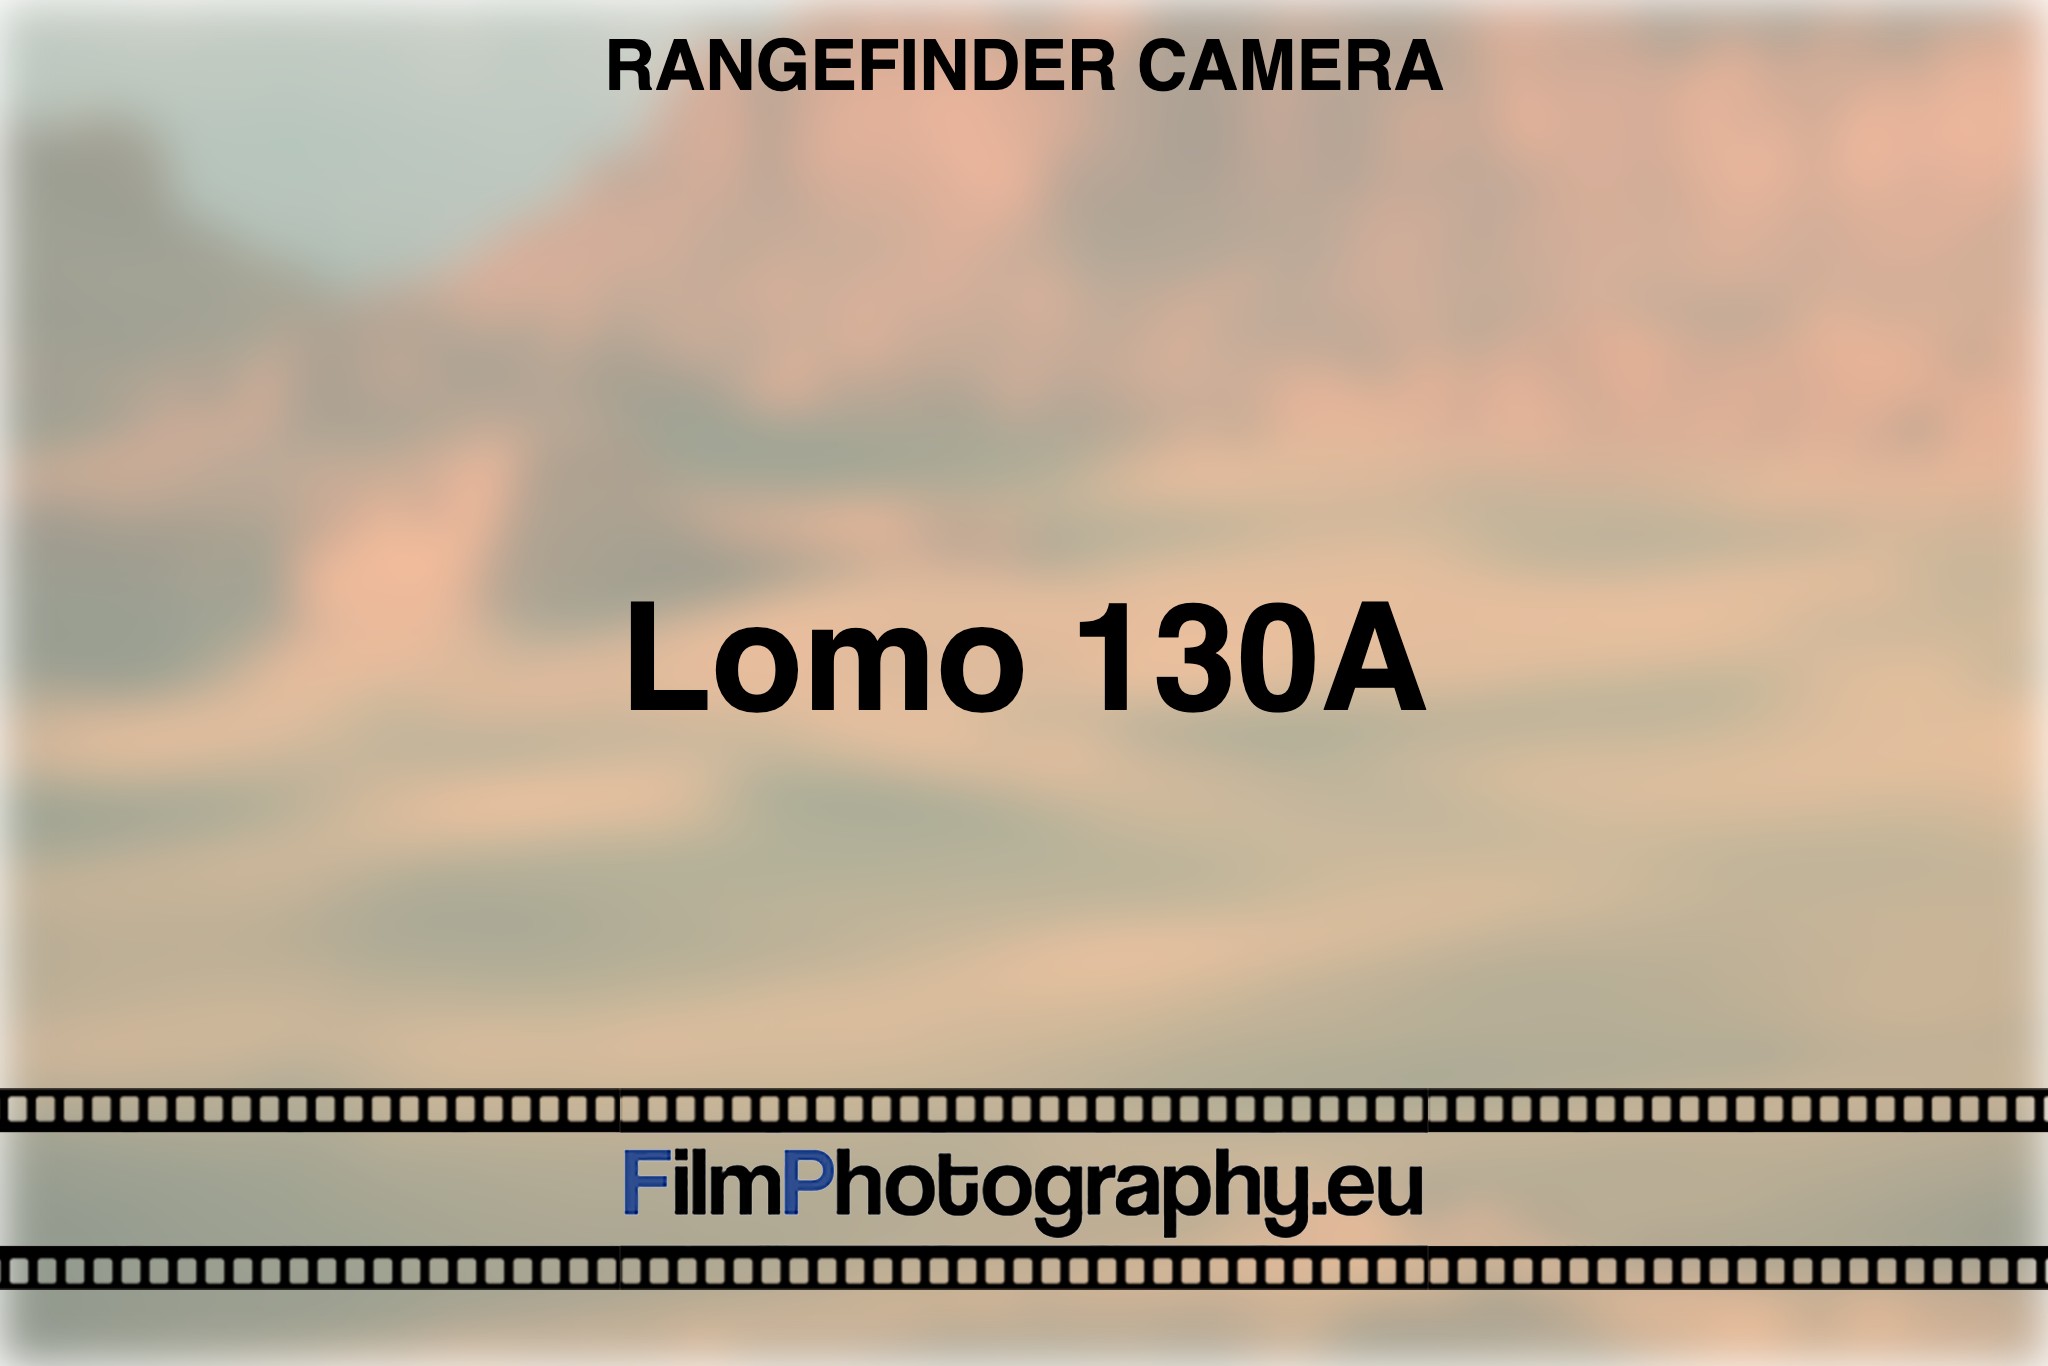 lomo-130a-rangefinder-camera-bnv